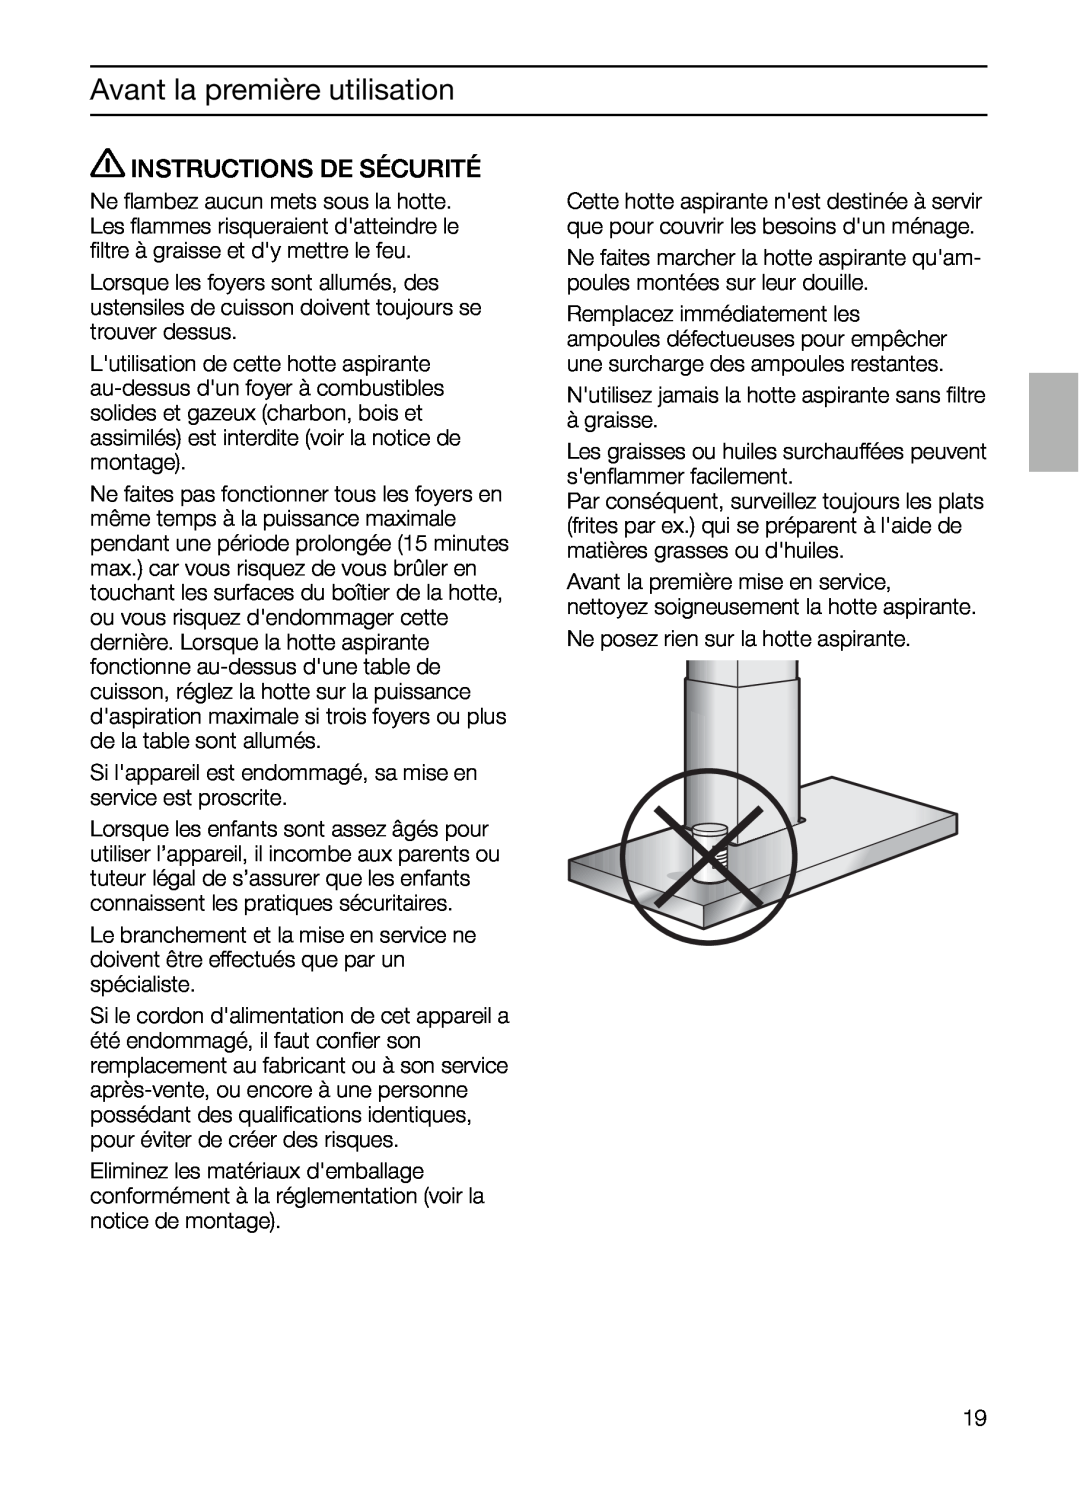 Bosch Appliances DIE 165 R manual Instructions De Sécurité, Safety Instructions, Avant la première utilisation 